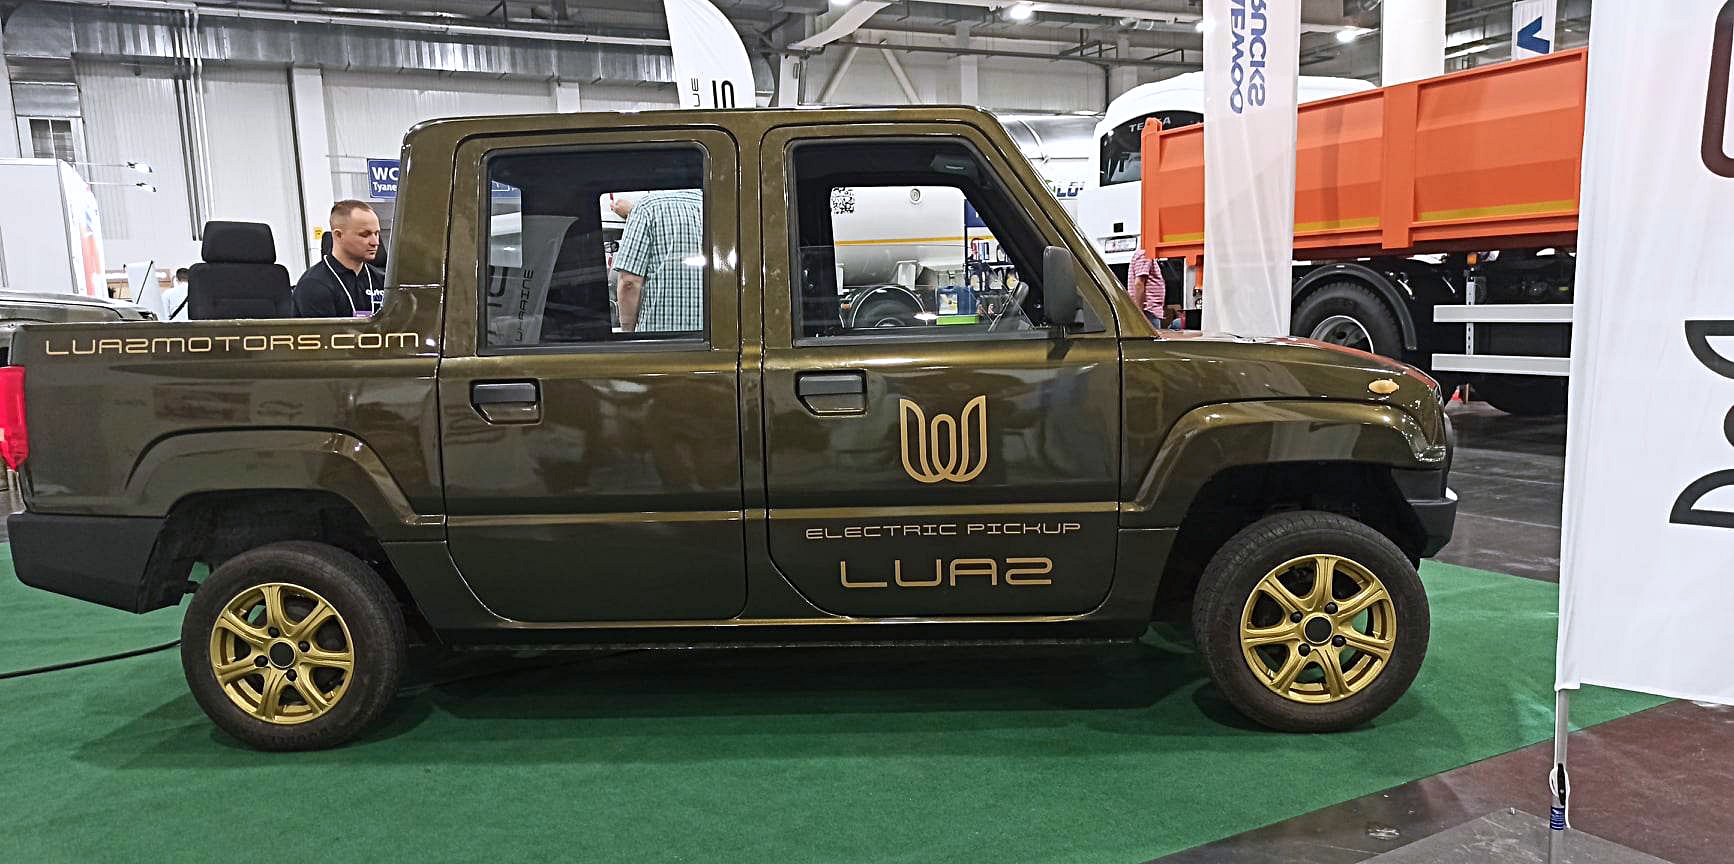 Что известно об украинском электропикапе LUAZ. Почему он похож на китайский и какая цена